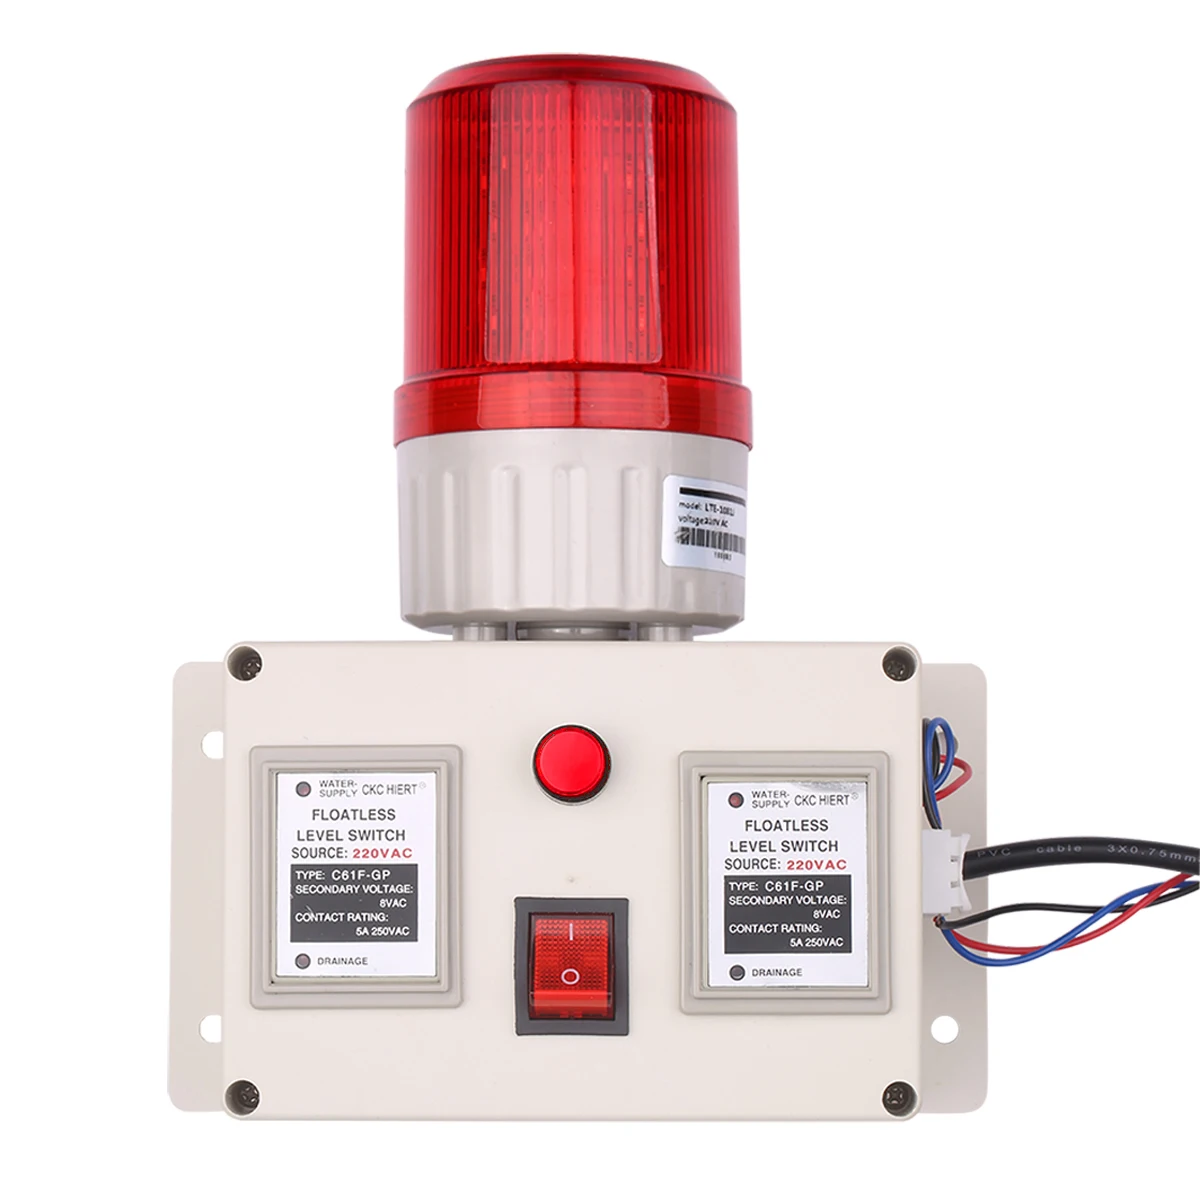 Alarma indicadora de nivel de agua, Sensor de alarma de nivel de agua, alarma indicadora de línea de agua baja y alta con interruptor de silenciador, Control de volumen